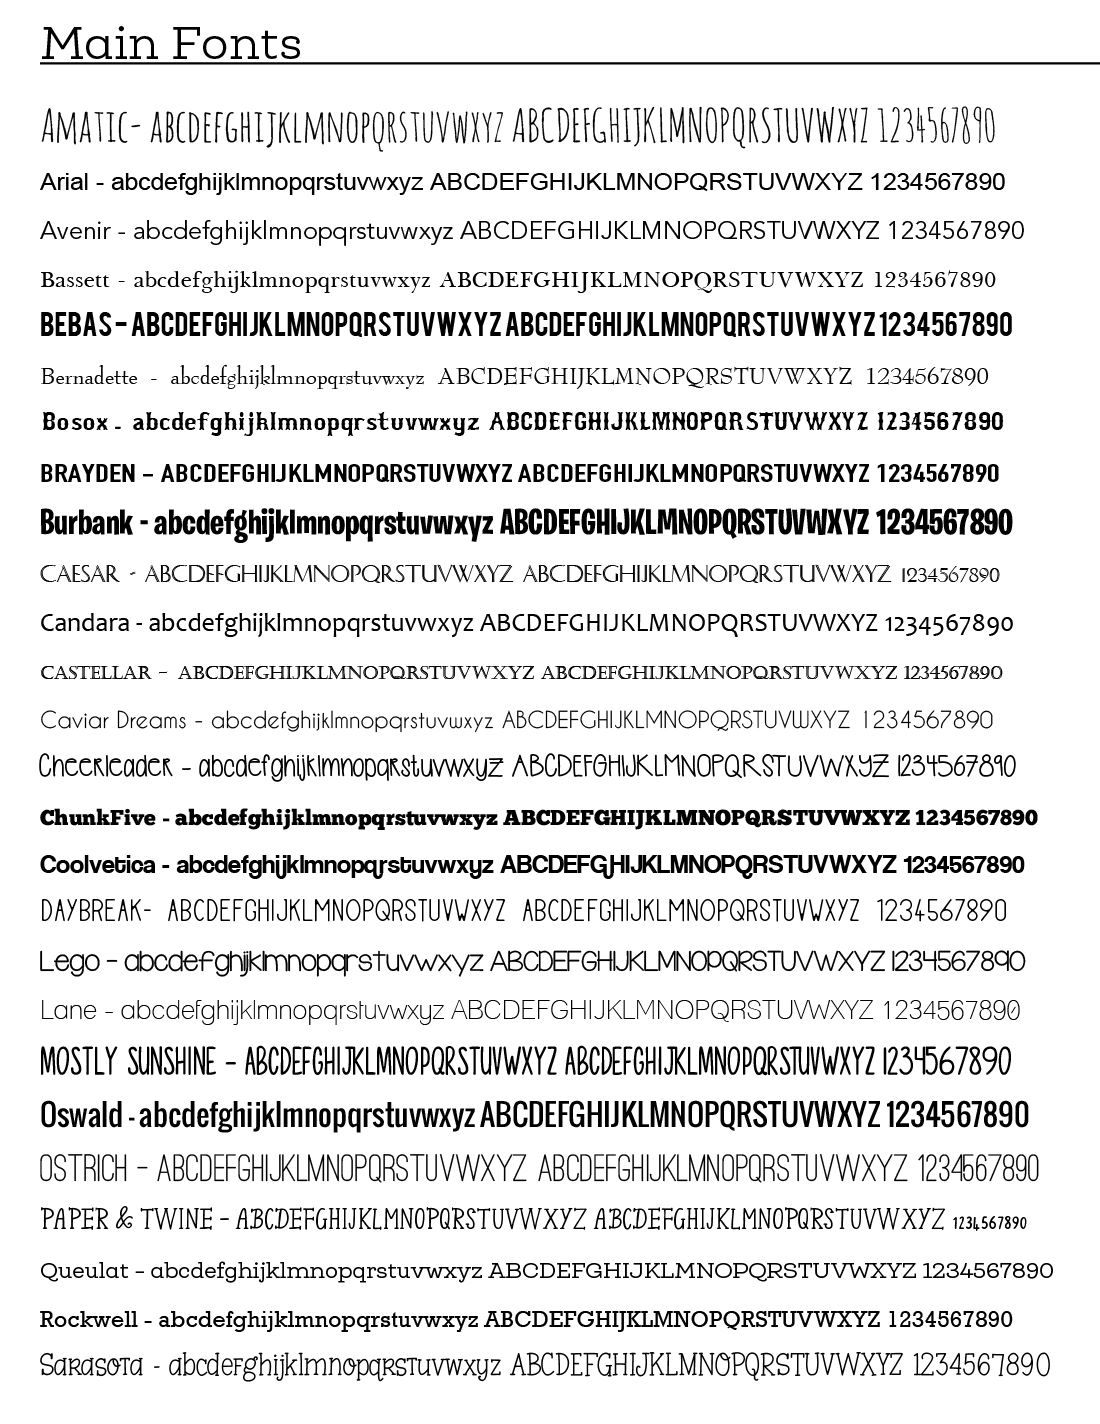 Font Options - Main Fonts